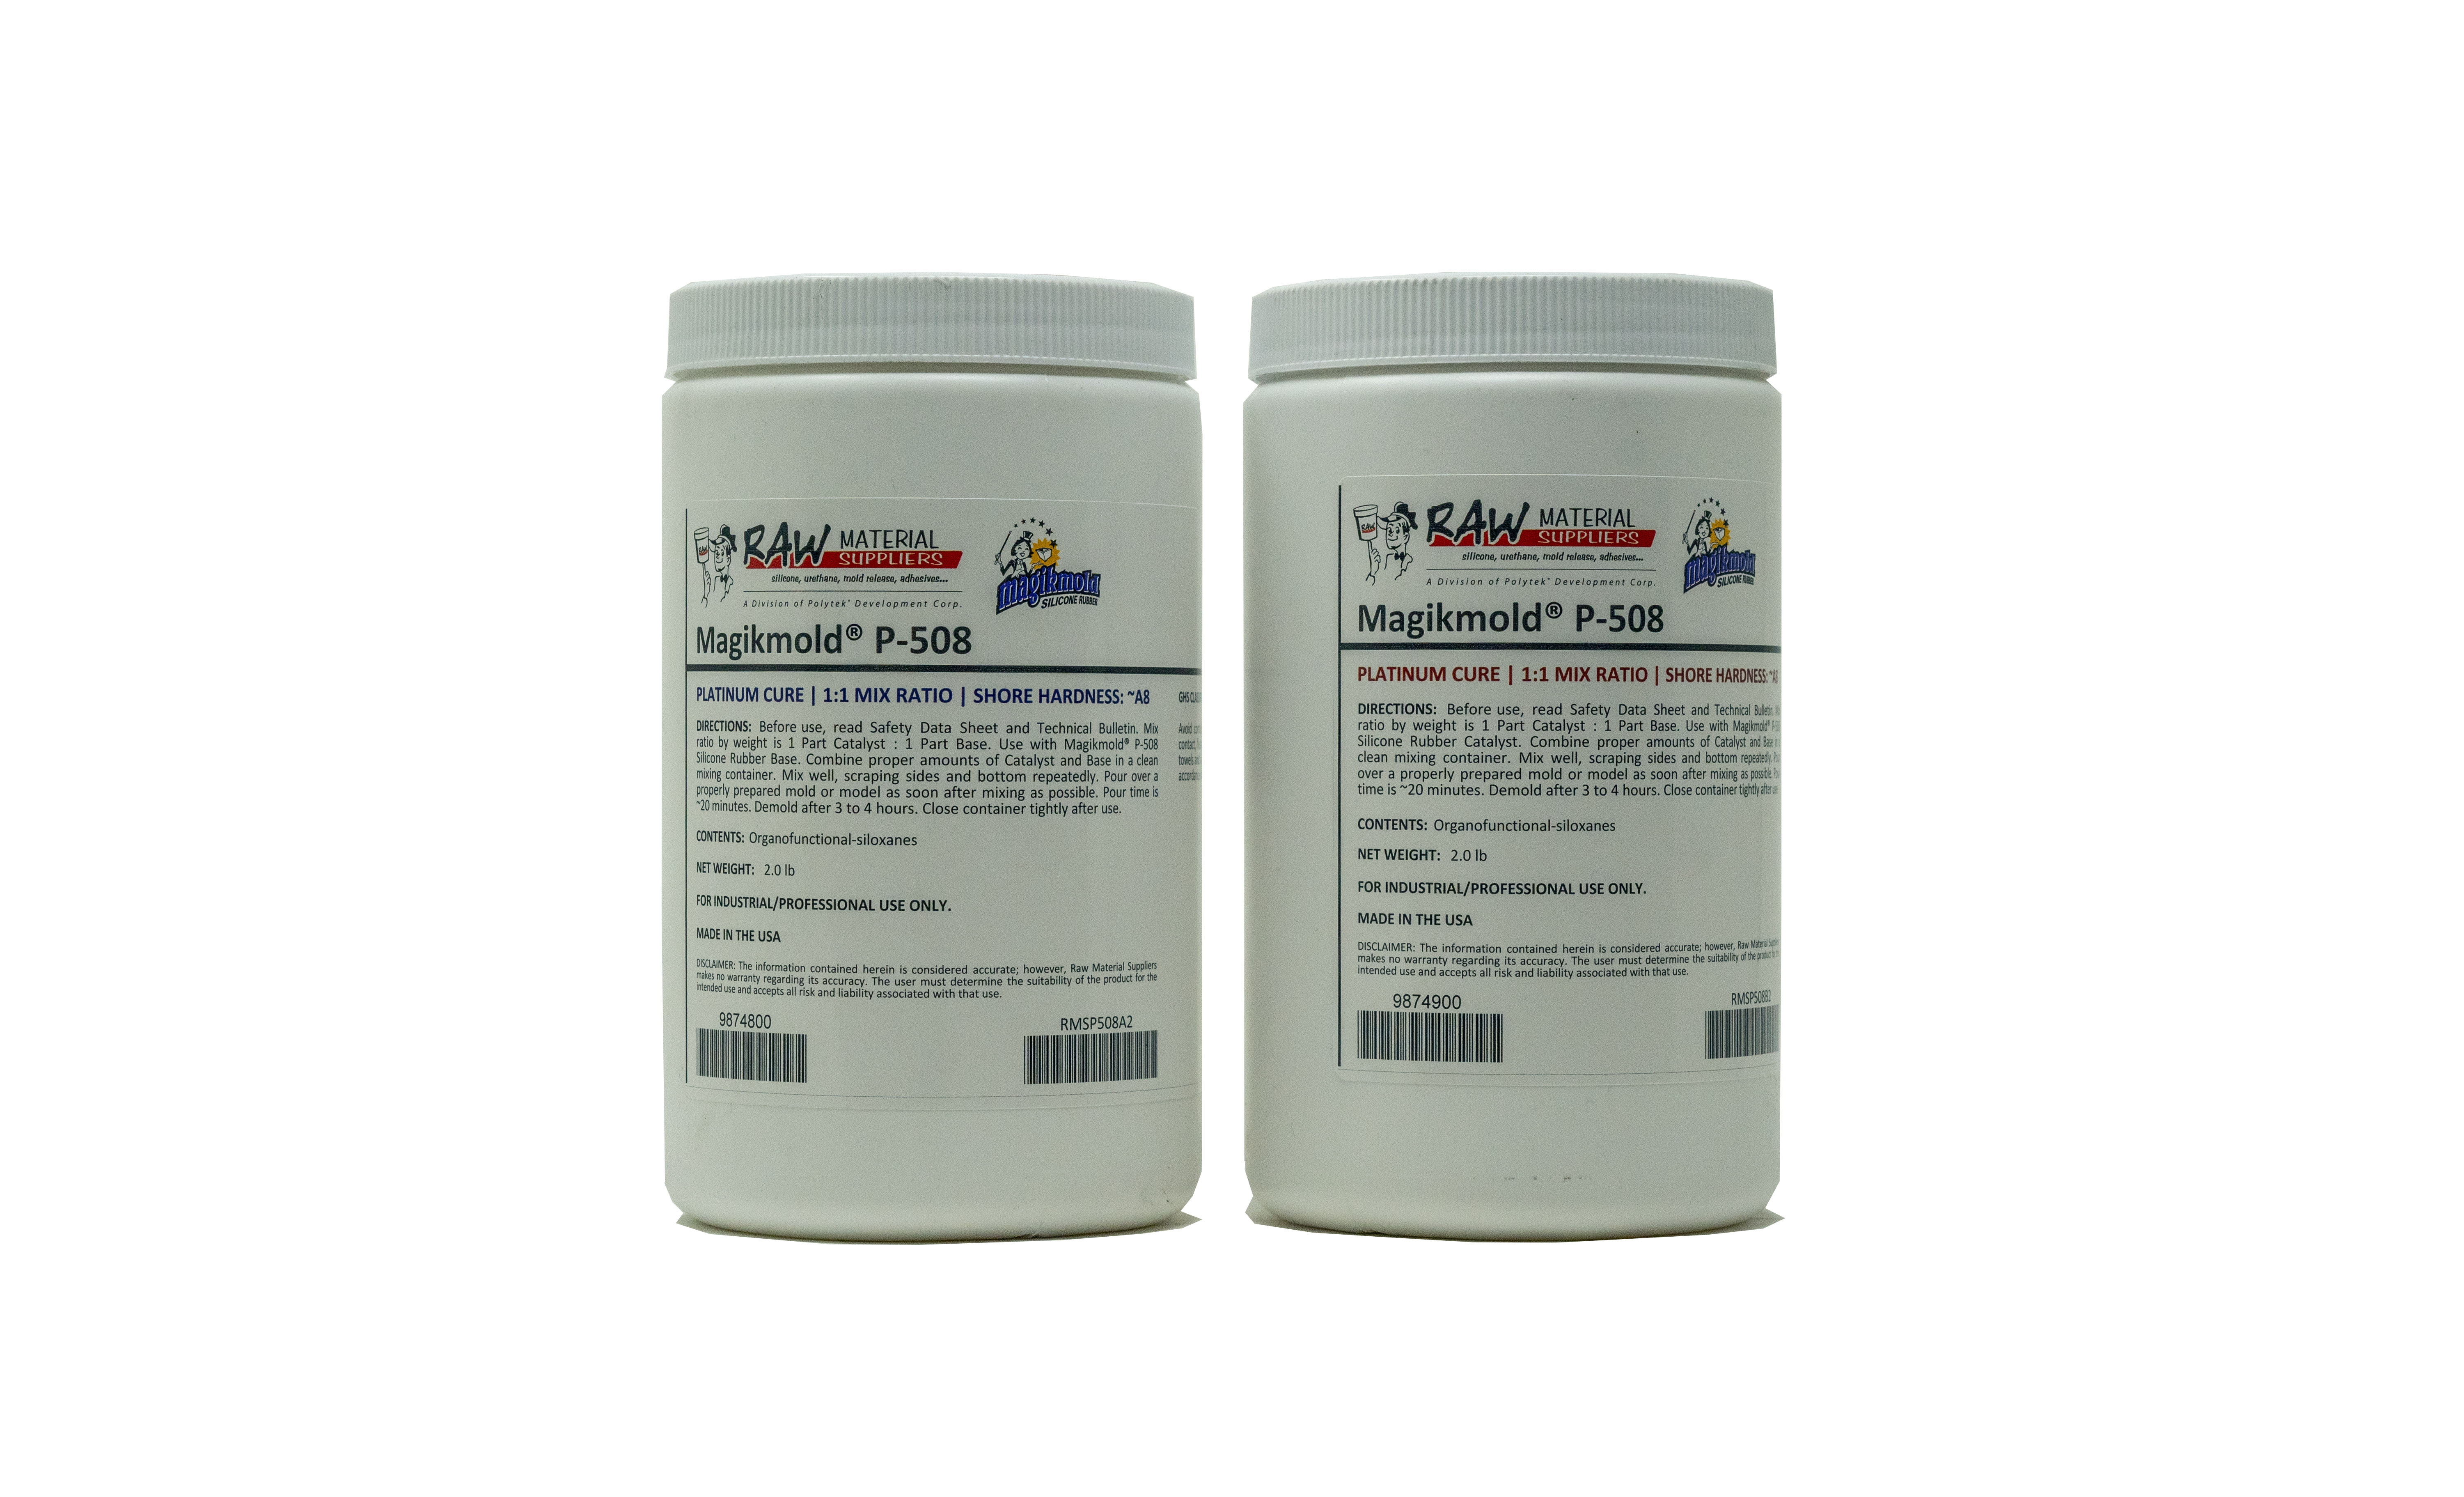 Platinum Cure Silicone Rubber for Semi-Rigid Mold